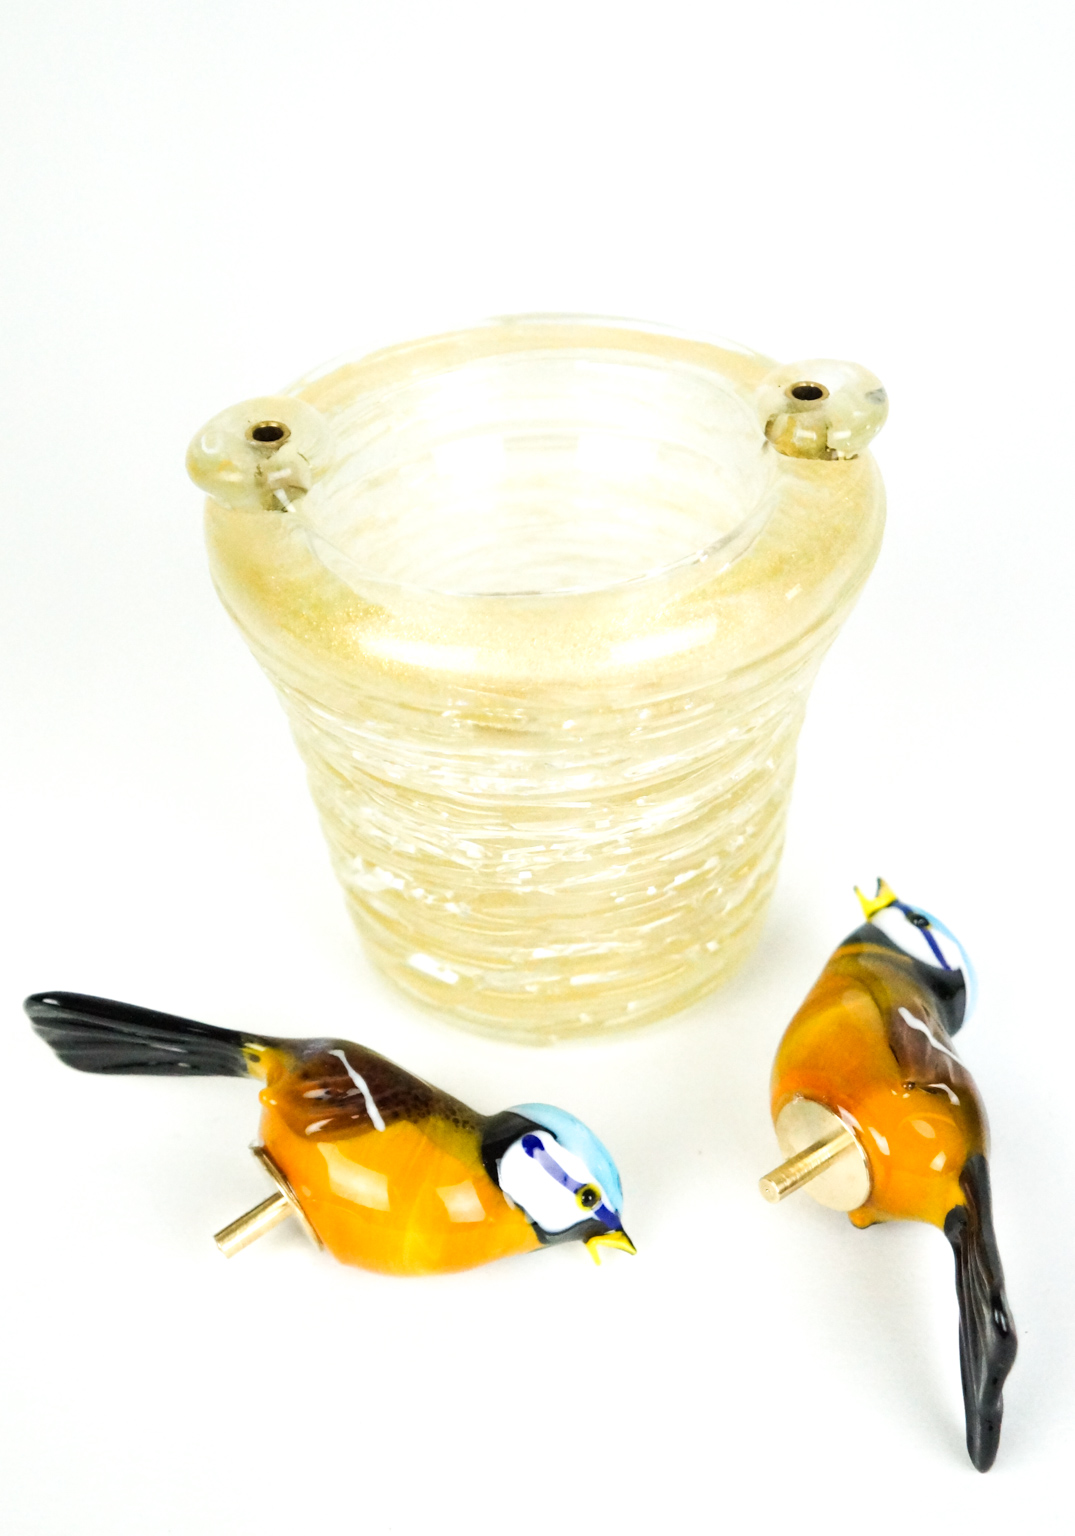 Nest With 2 Birds - Gardellini - Murano Glass